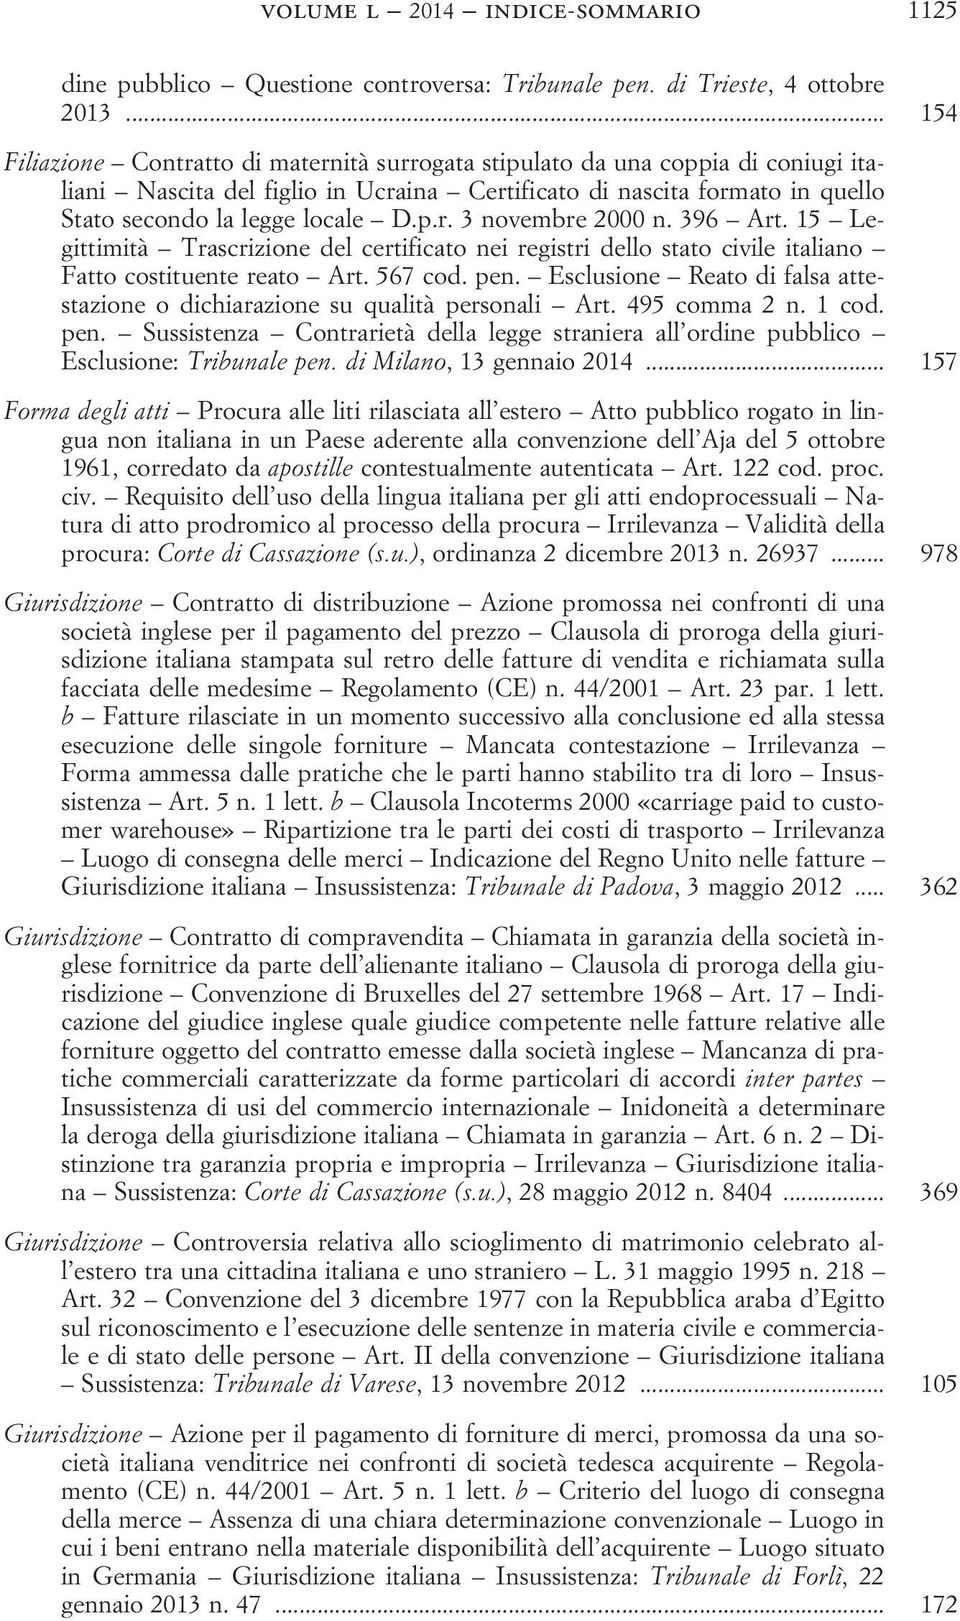 396 Art. 15 Legittimità Trascrizione del certificato nei registri dello stato civile italiano Fatto costituente reato Art. 567 cod. pen.